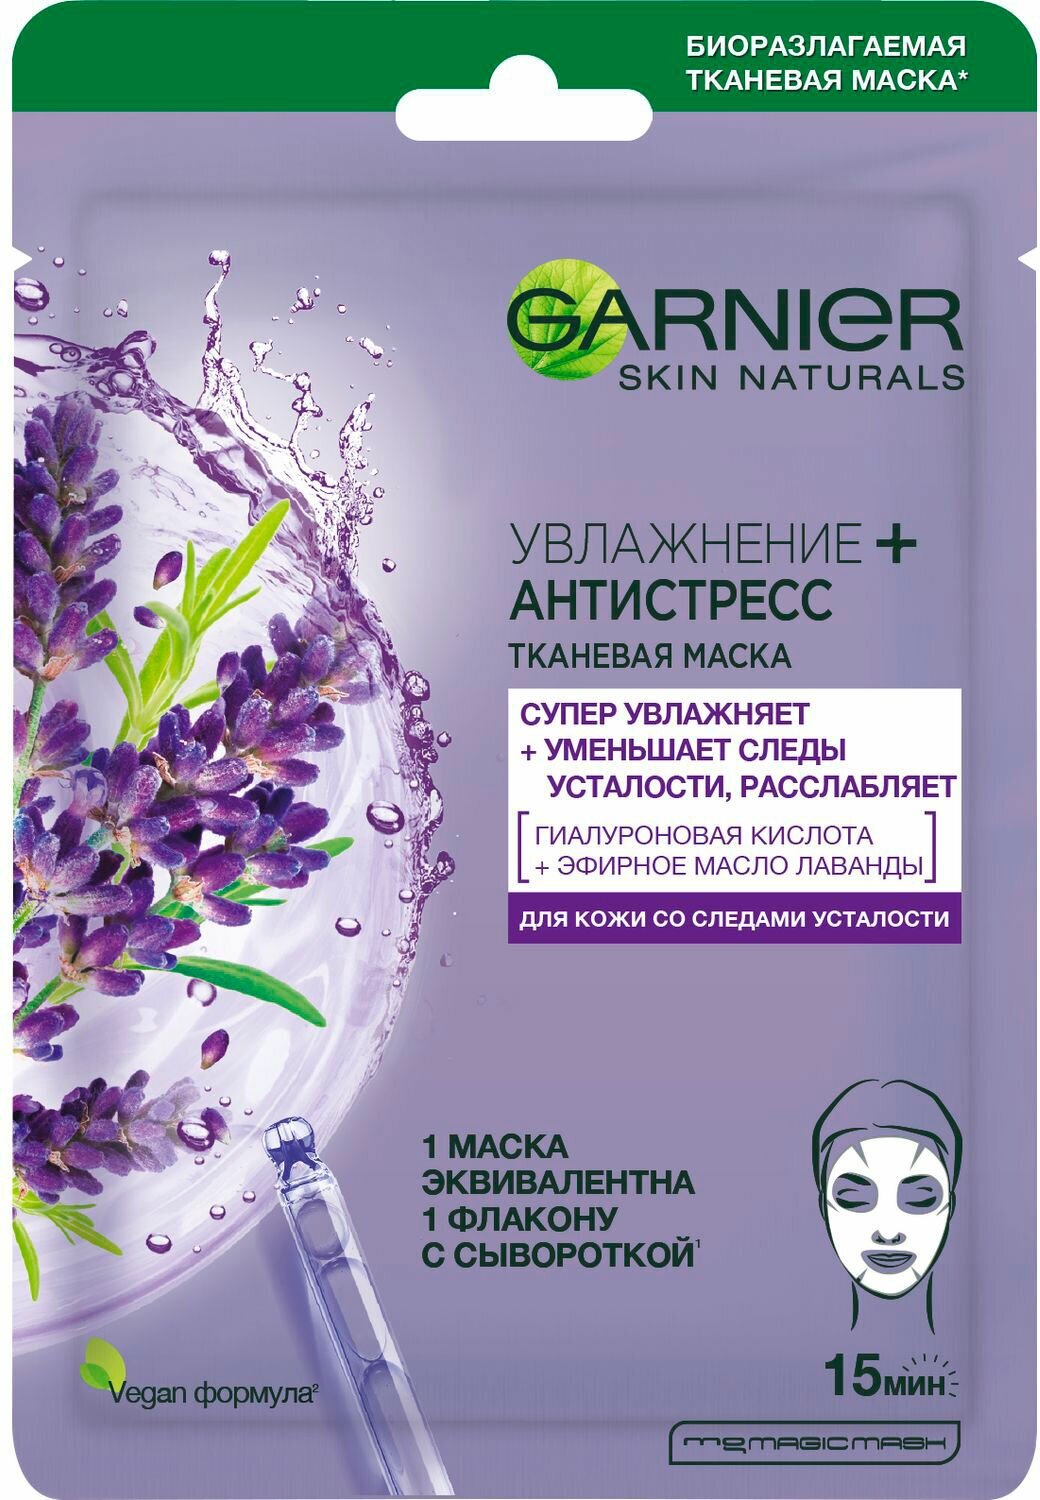 Garnier Тканевая маска для лица «Увлажнение + Антистресс» с гиалуроновой кислотой и маслом лаванды против следов усталости для увлажнения, питания и восстановления сияния кожи